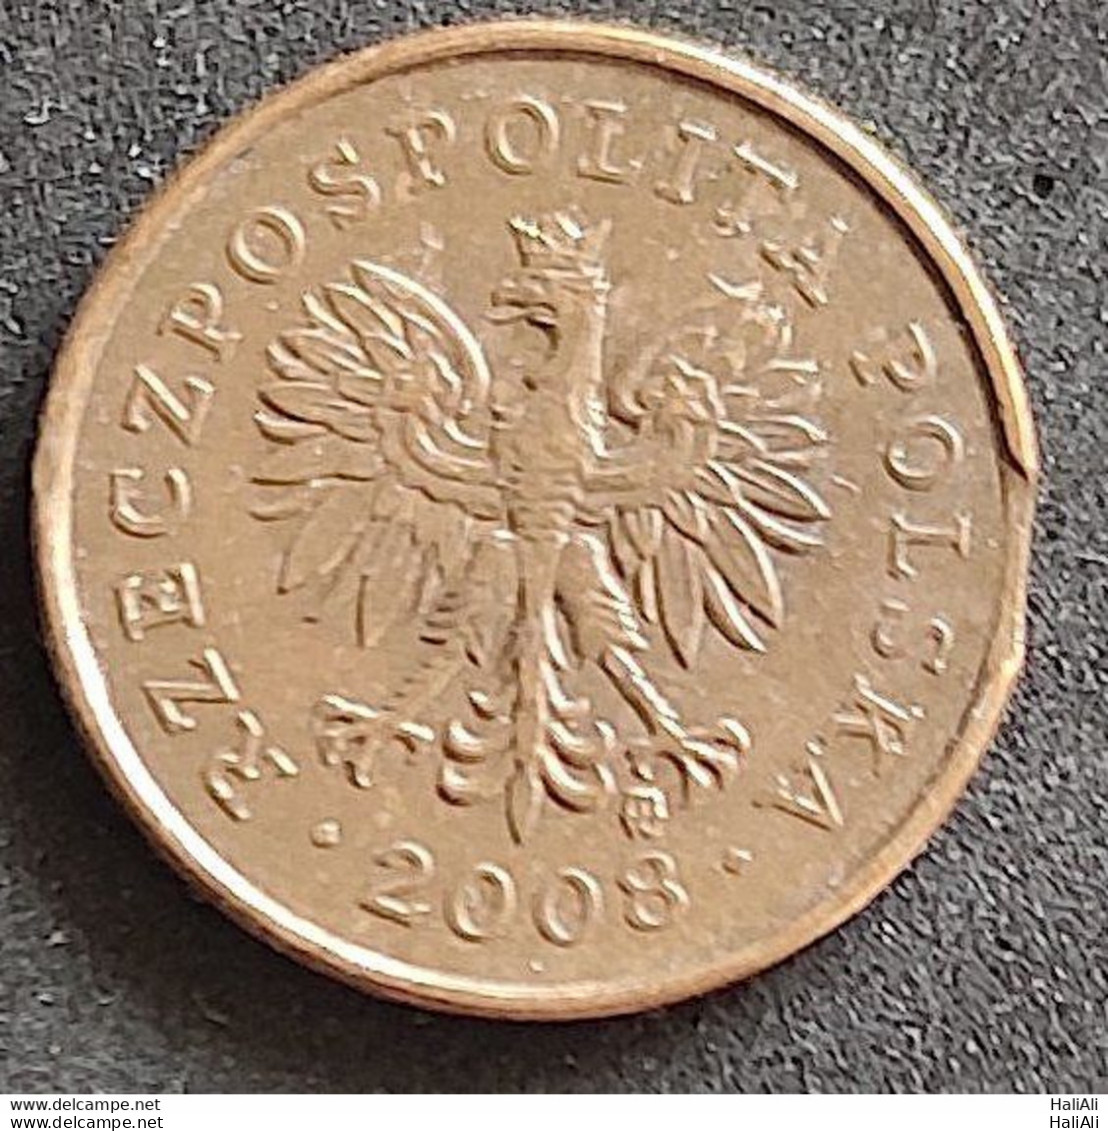 Coin Poland 2008 2 Grosze 1 - Poland